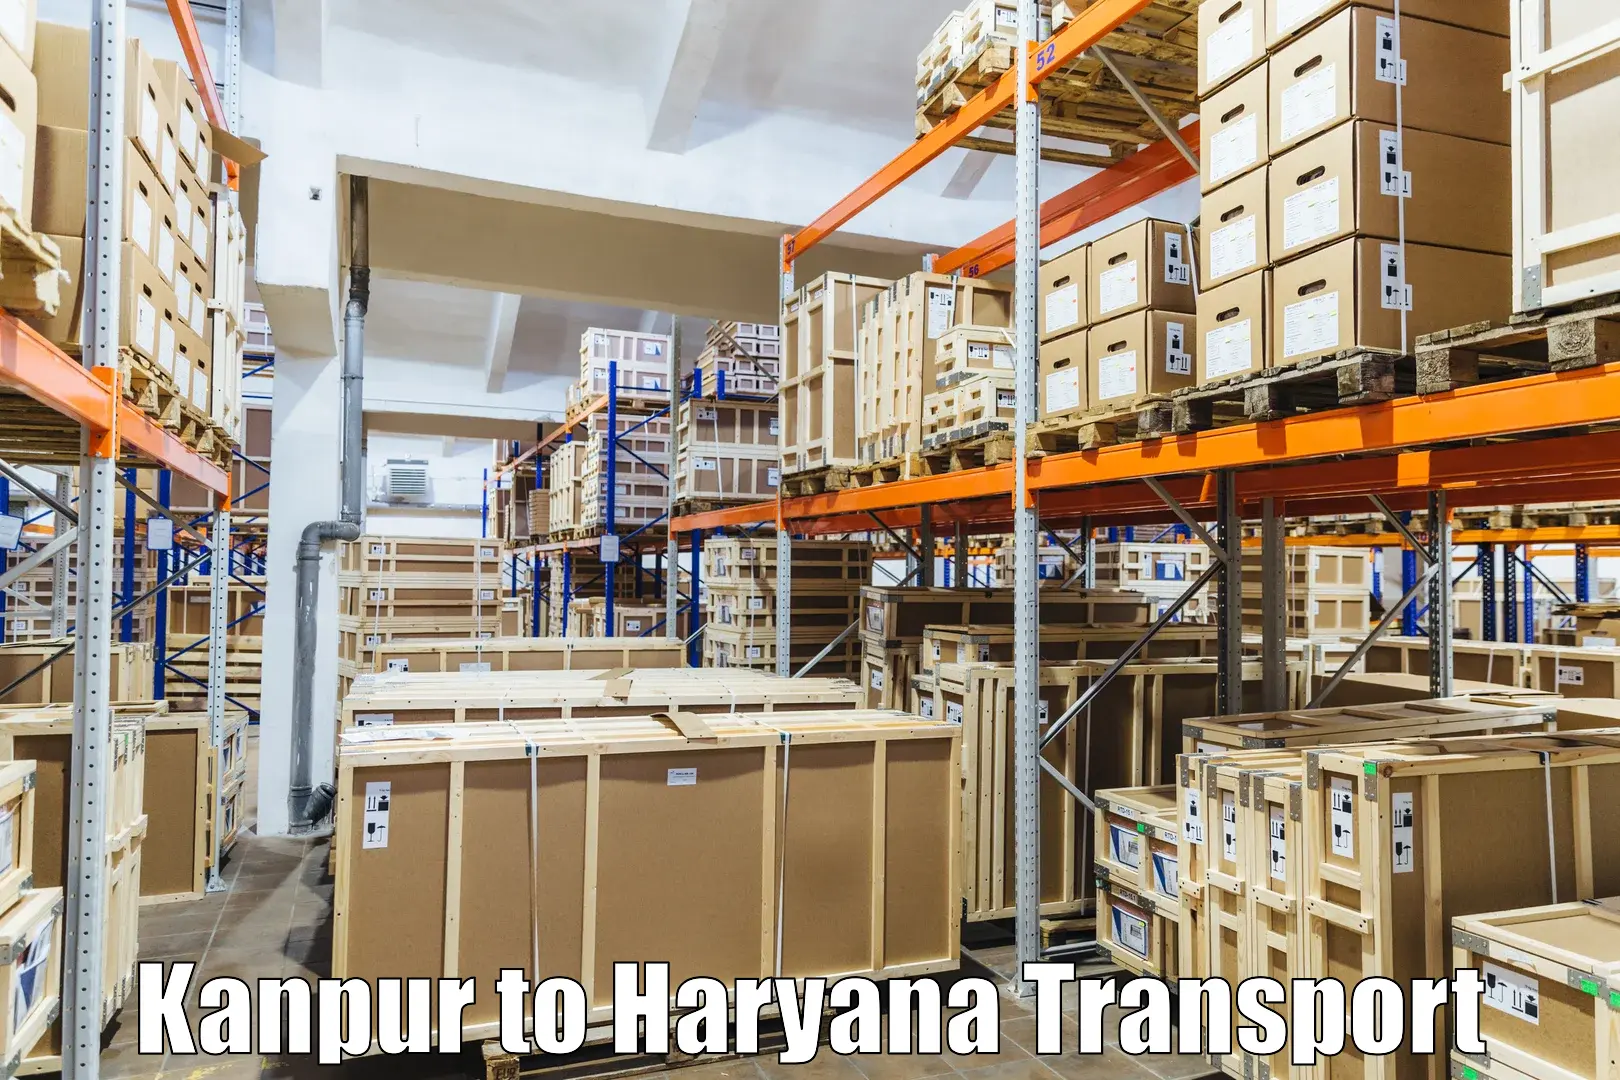 Truck transport companies in India Kanpur to Kurukshetra